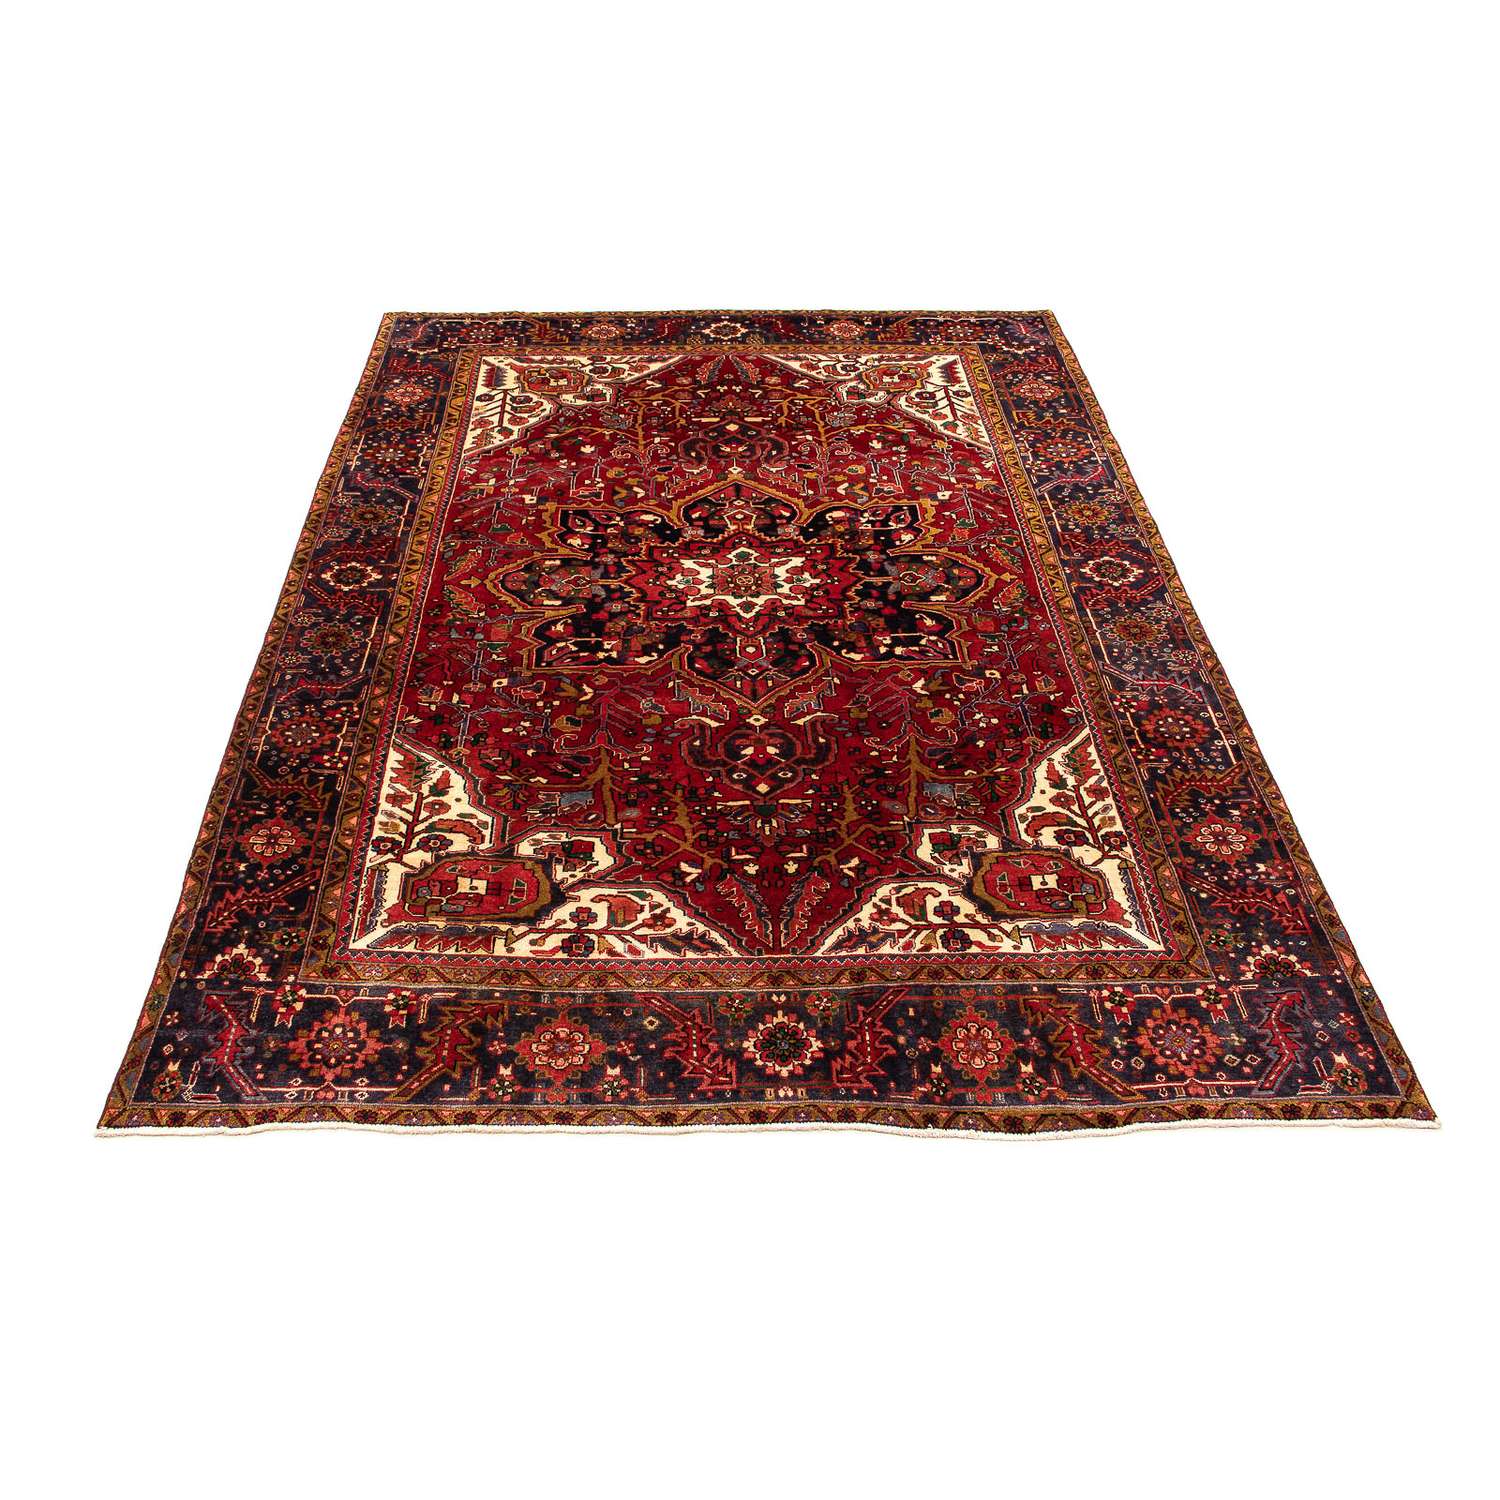 Persisk teppe - Nomadisk - 362 x 277 cm - mørk rød